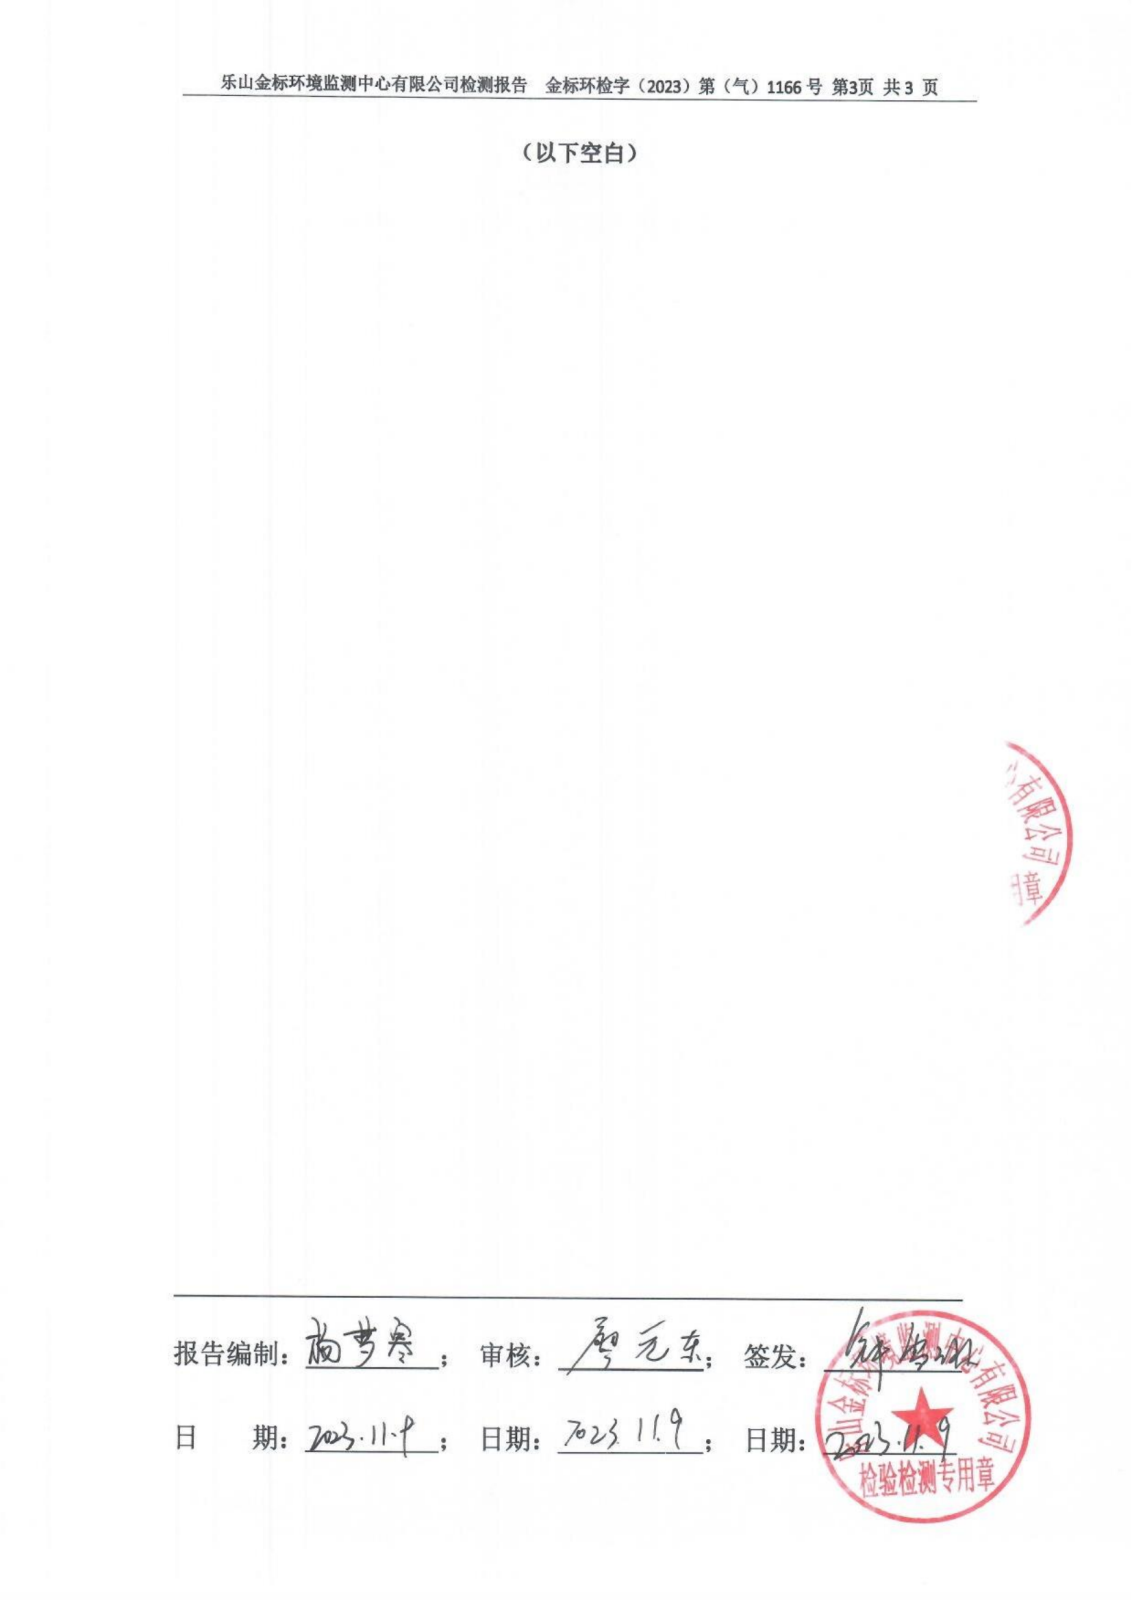 11月6、7、8#窑固定污染源废气检测报告 金标环检字（2023）第（气）1166号_04.png